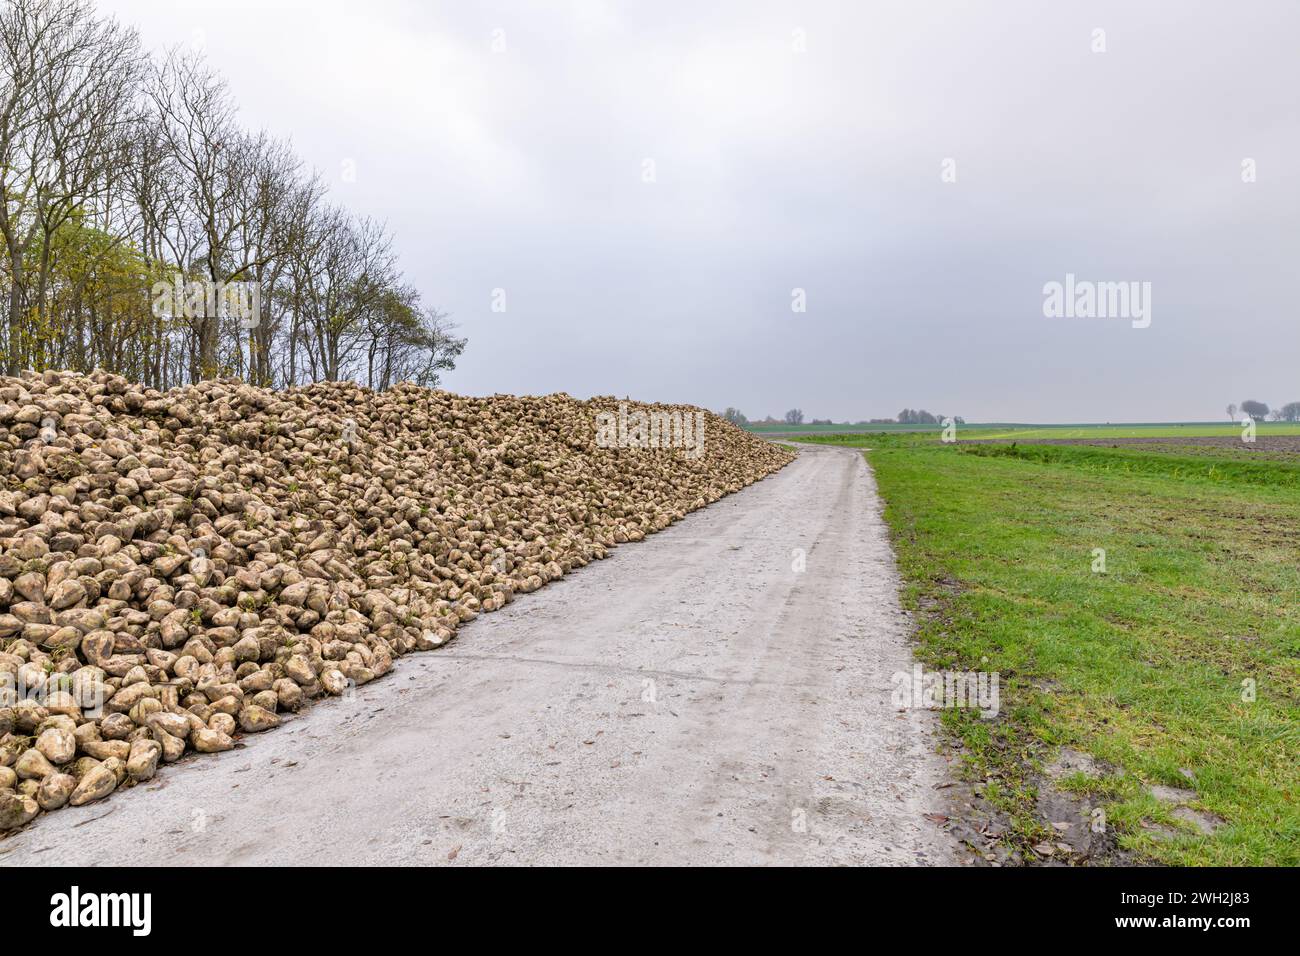 Eine Lagerklammer für geerntete Zuckerrüben, die im Herbst entlang eines Pfads auf Ackerland gestapelt wurde. Stockfoto